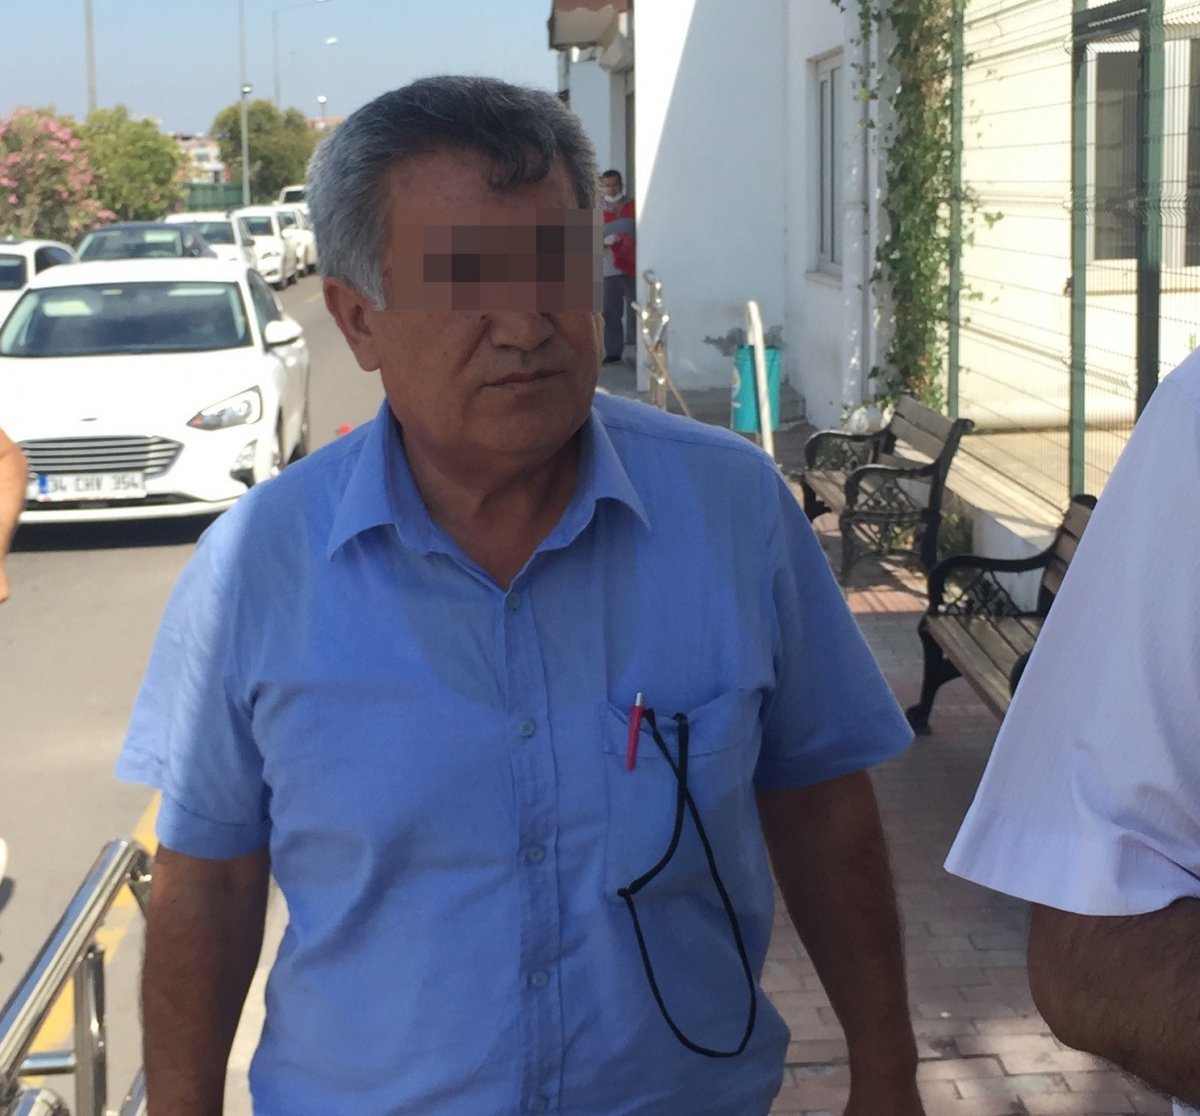 Adana da İyi Partili meclis üyesi, boşandığı eşini bıçakladı #1